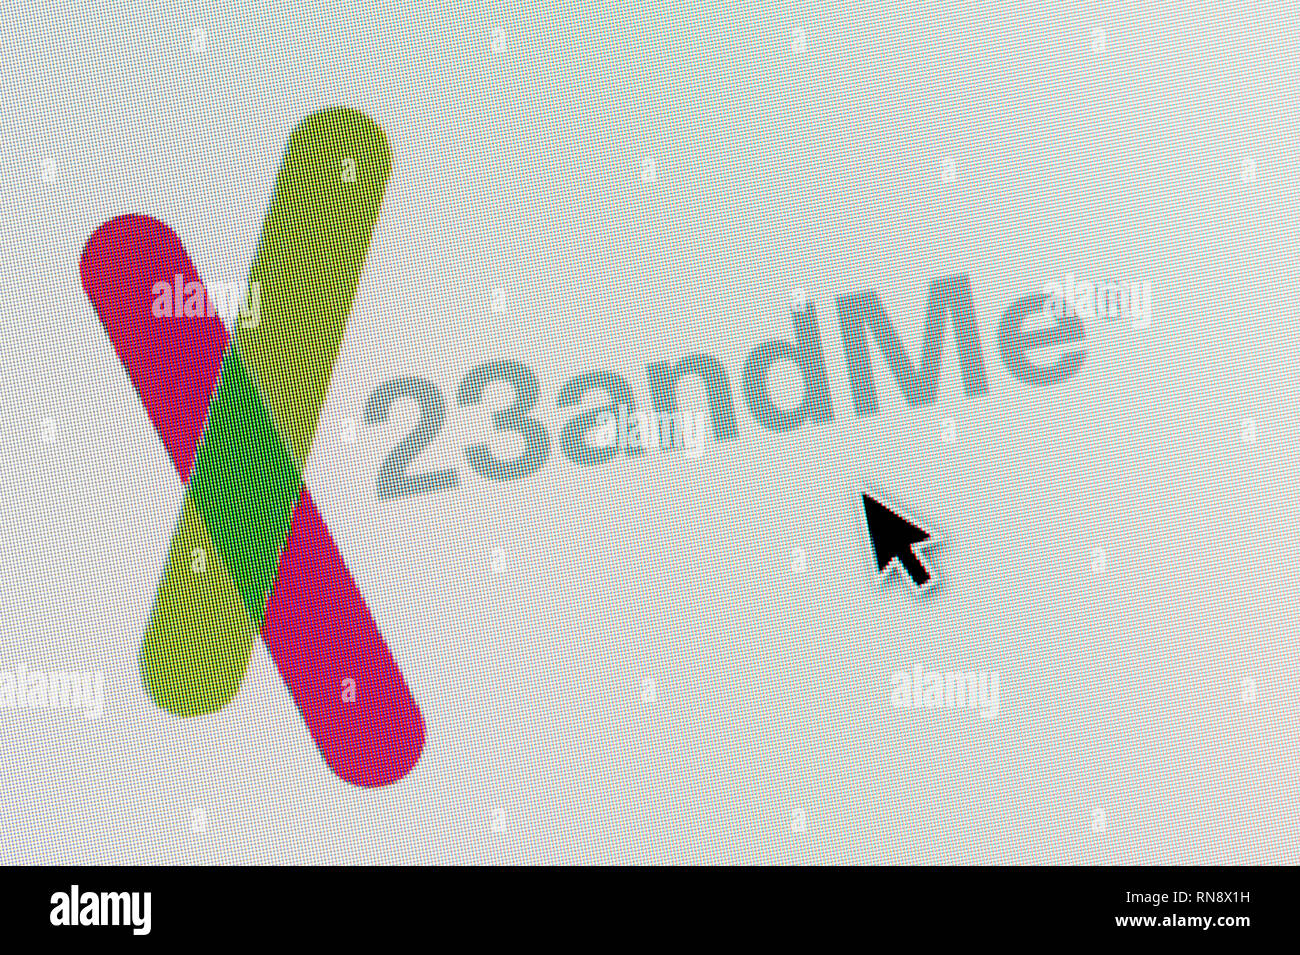 Das Logo von 23andme ist auf einem Bildschirm gesehen zusammen mit einer Maus Cursor (nur redaktionelle Nutzung) Stockfoto